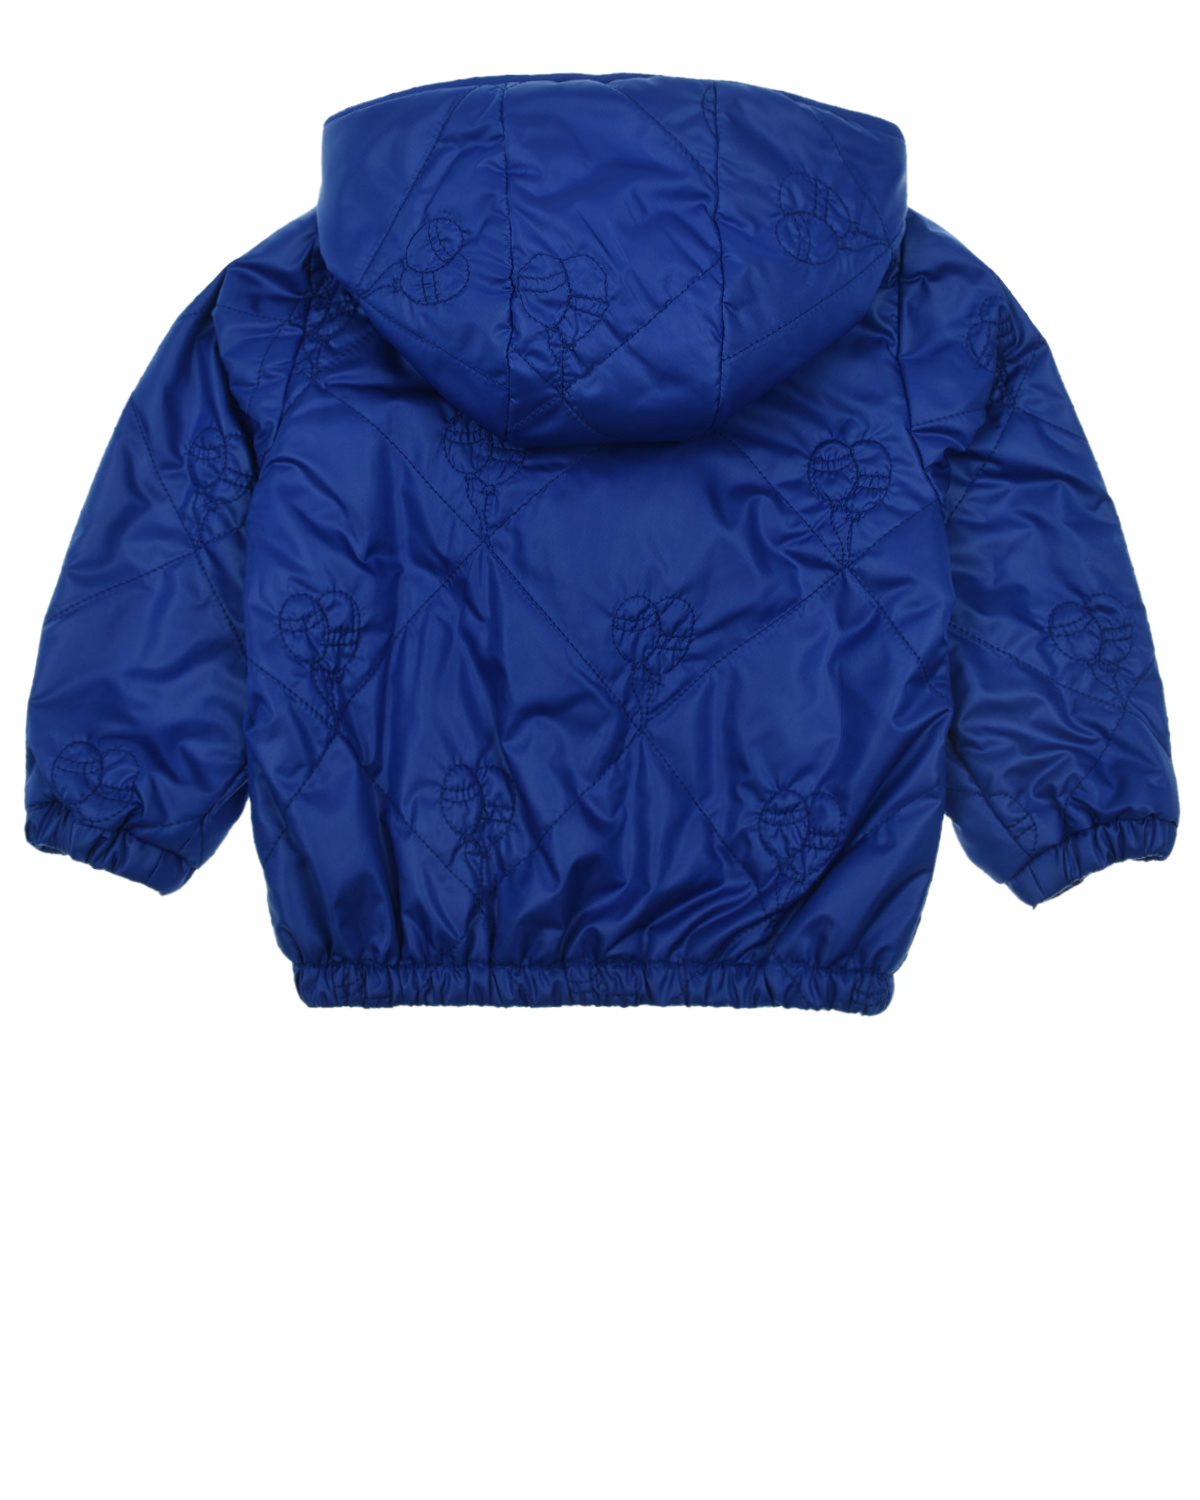 Синяя куртка с вышивкой "воздушные шары" Aletta детская, размер 92, цвет синий - фото 2